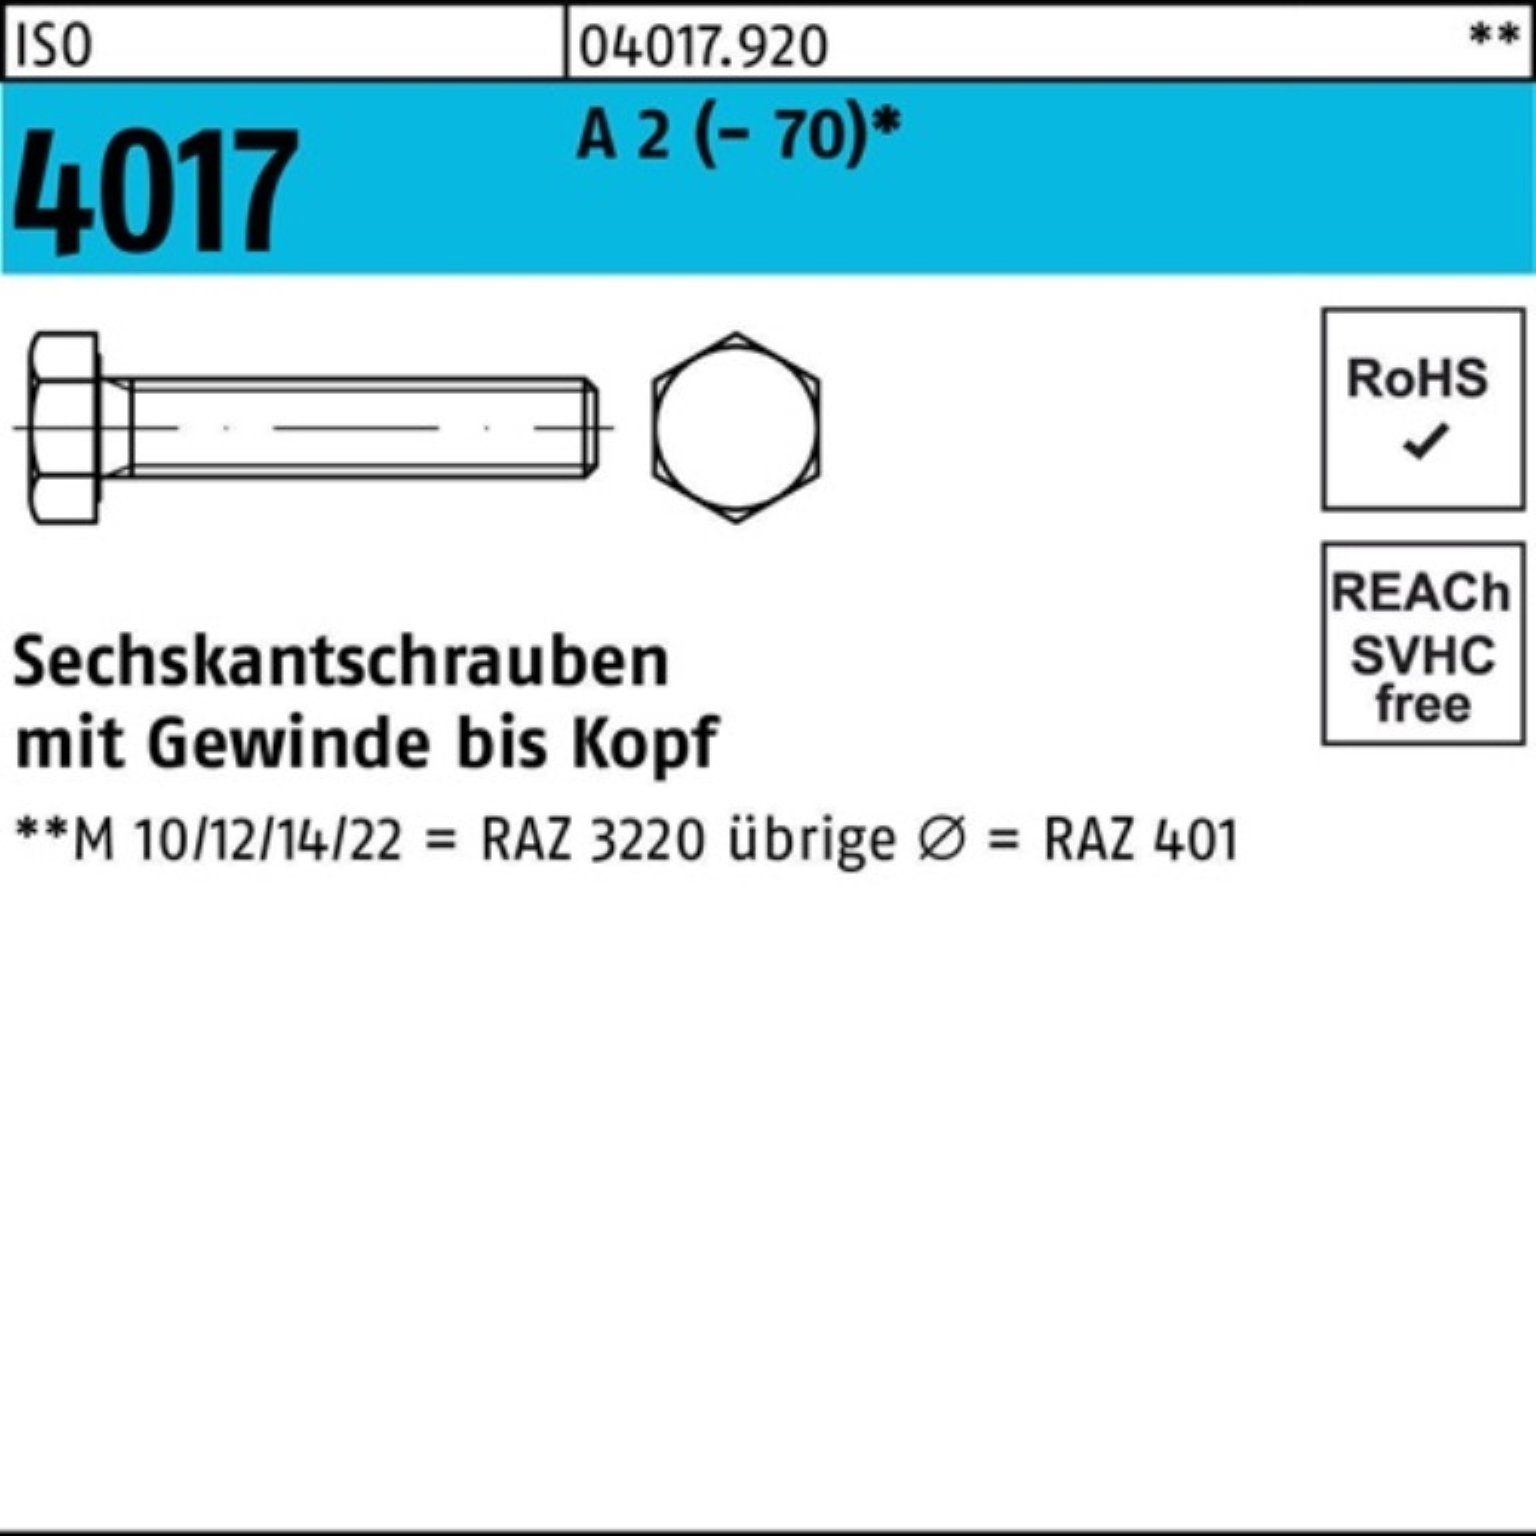 Bufab Sechskantschraube 100er Pack Sechskantschraube ISO 4017 VG M14x 55 A 2 (70) 50 Stück